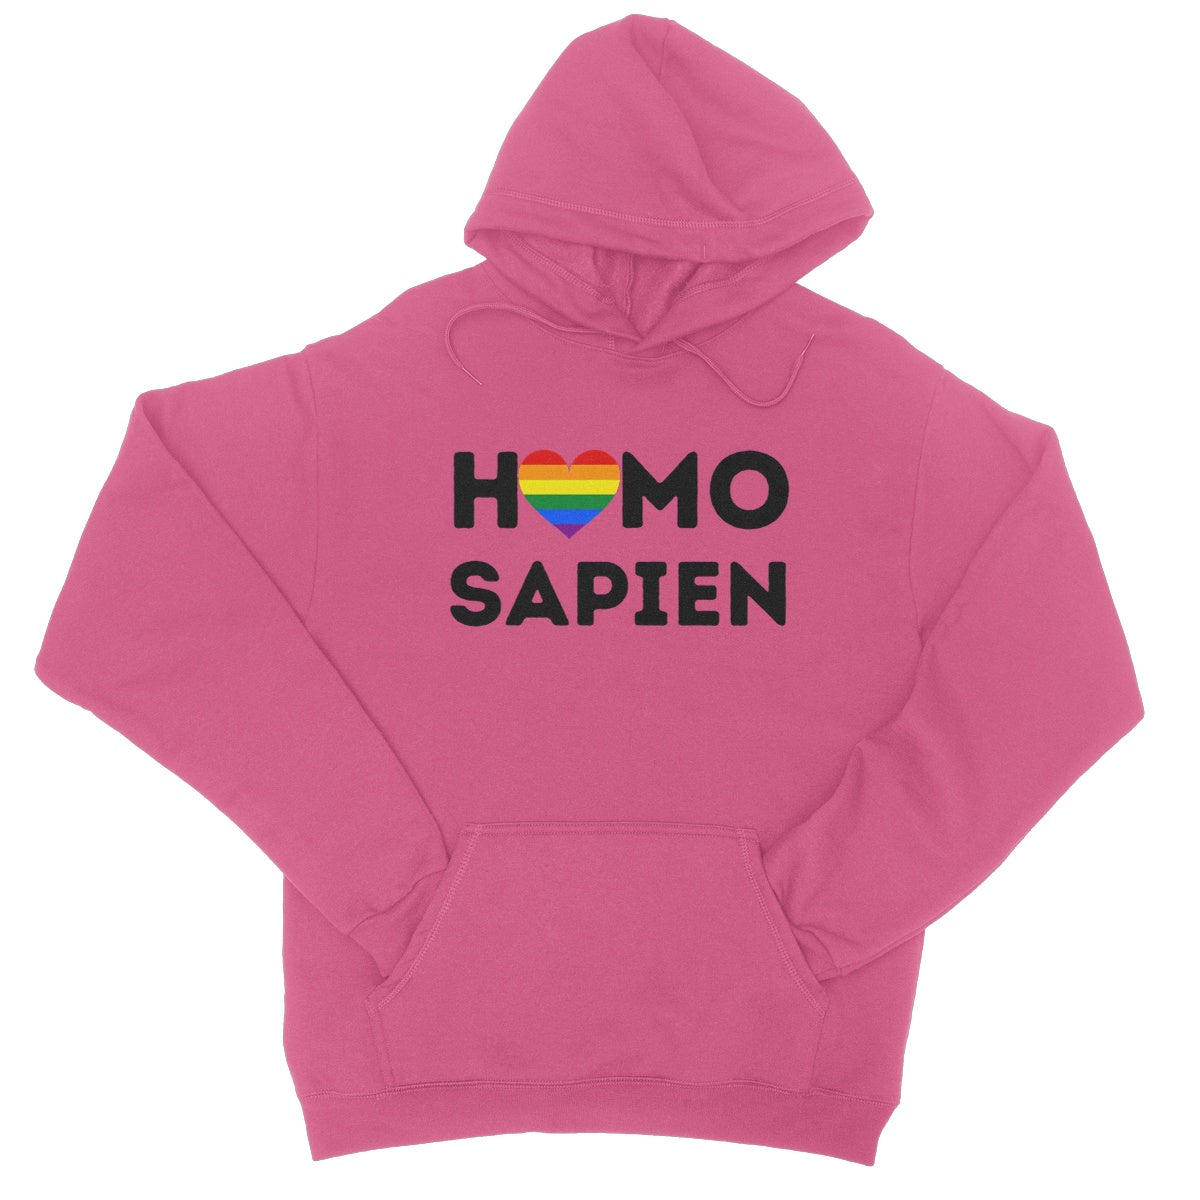 homo sapien hoodie pink